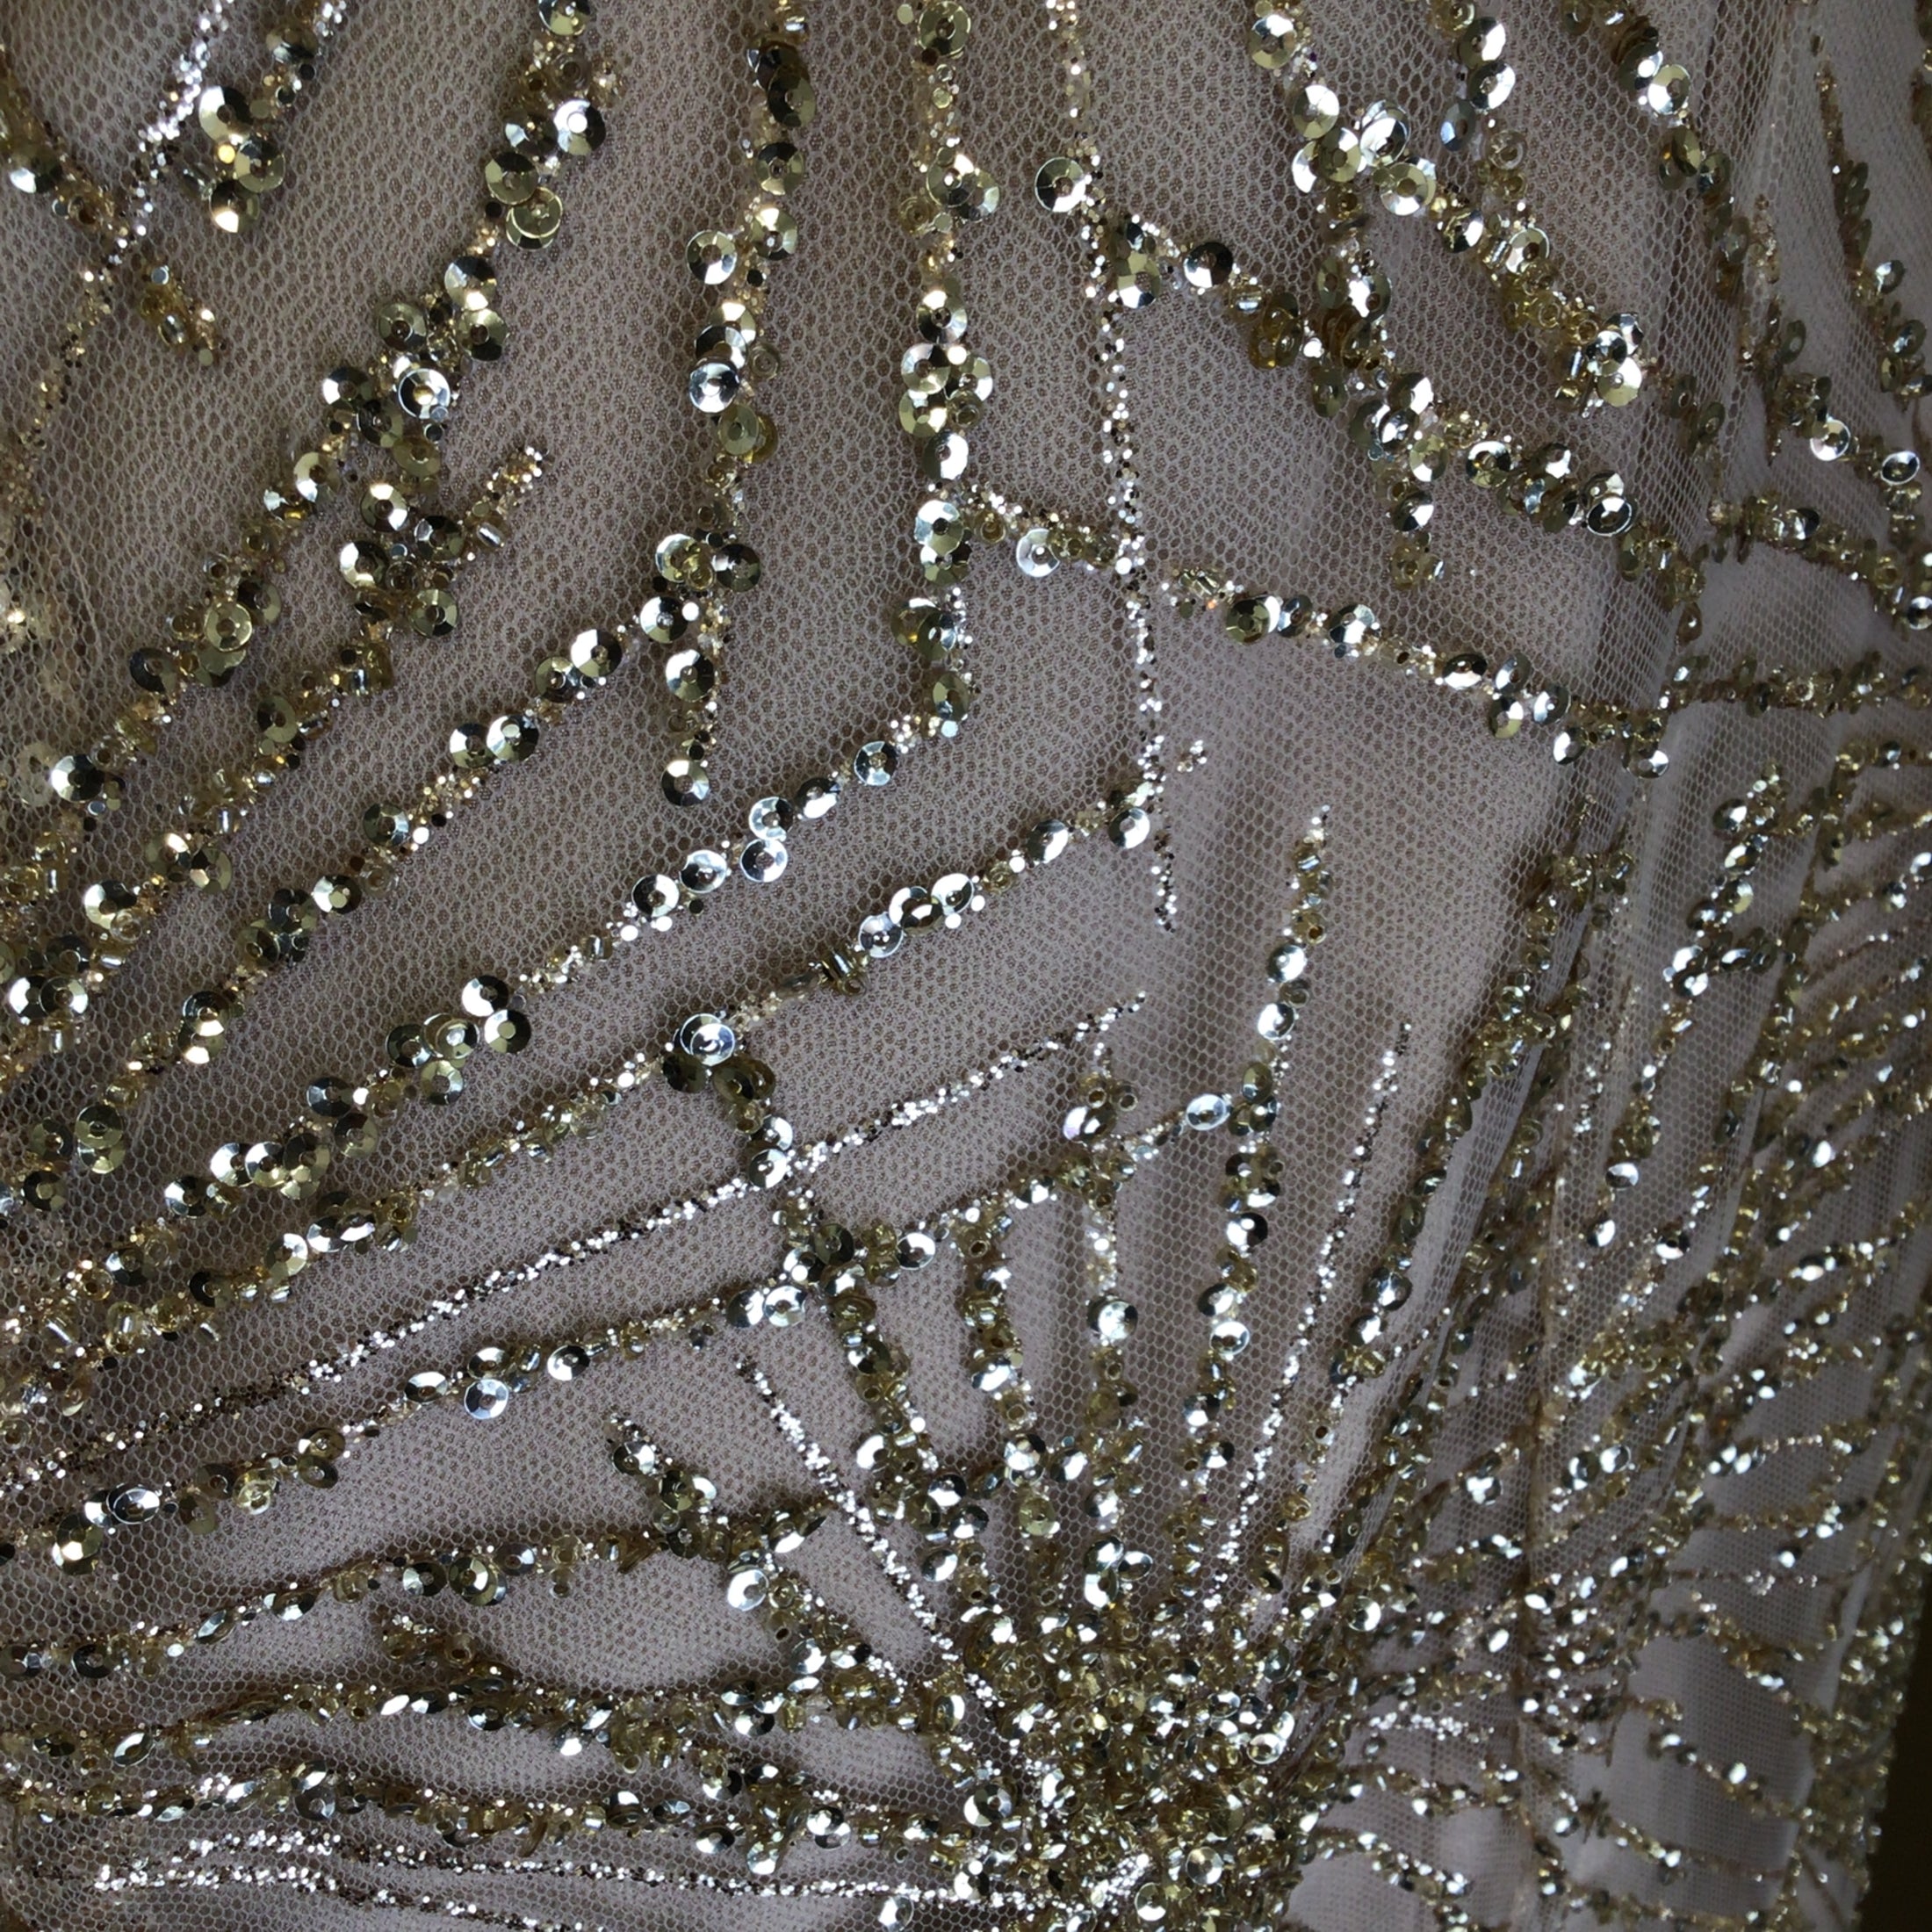 Marchesa Notte Gold Metallic / Beige Embellished Mesh Tulle Front Slit Gown / Formal Dress